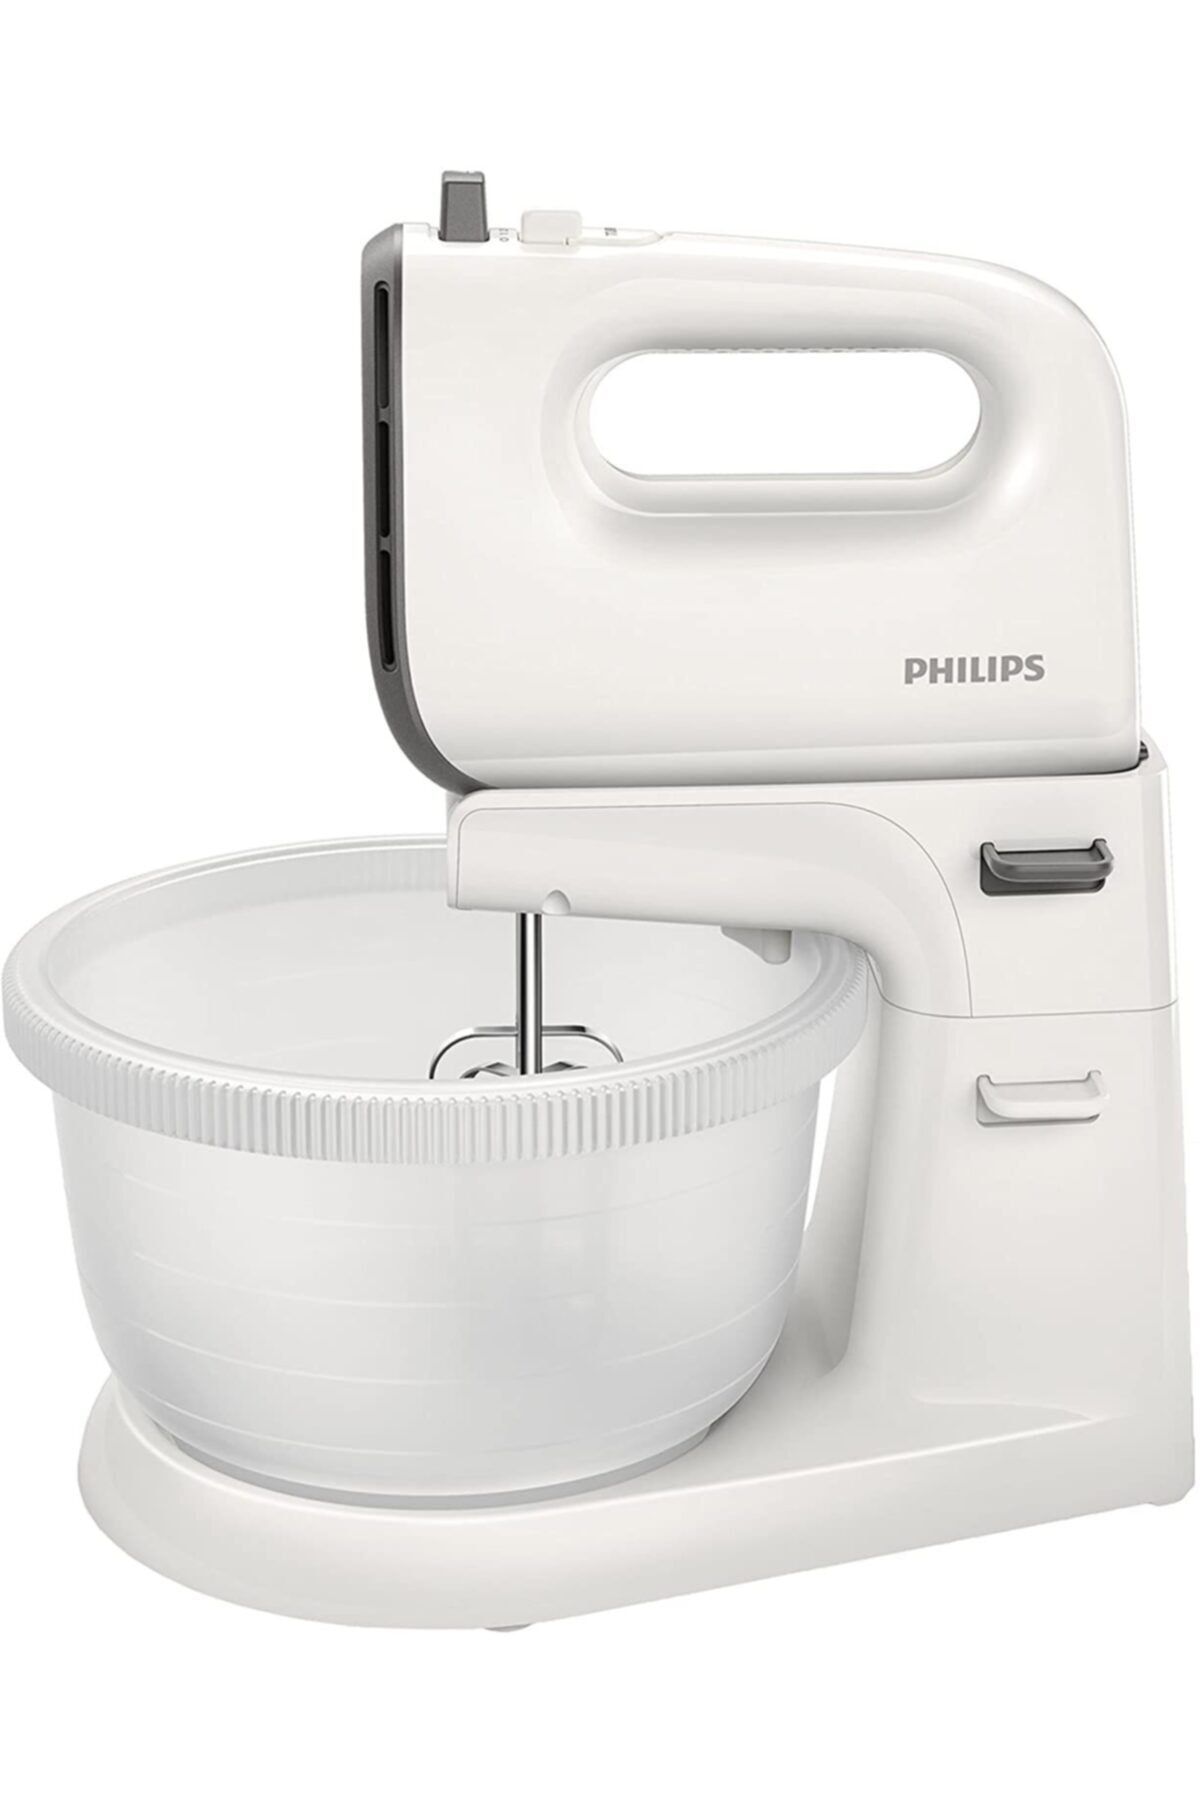 Philips Hr3745/00 Pasta Makinesi, Plastik, Gri, Beyaz [enerji Sınıfı A]